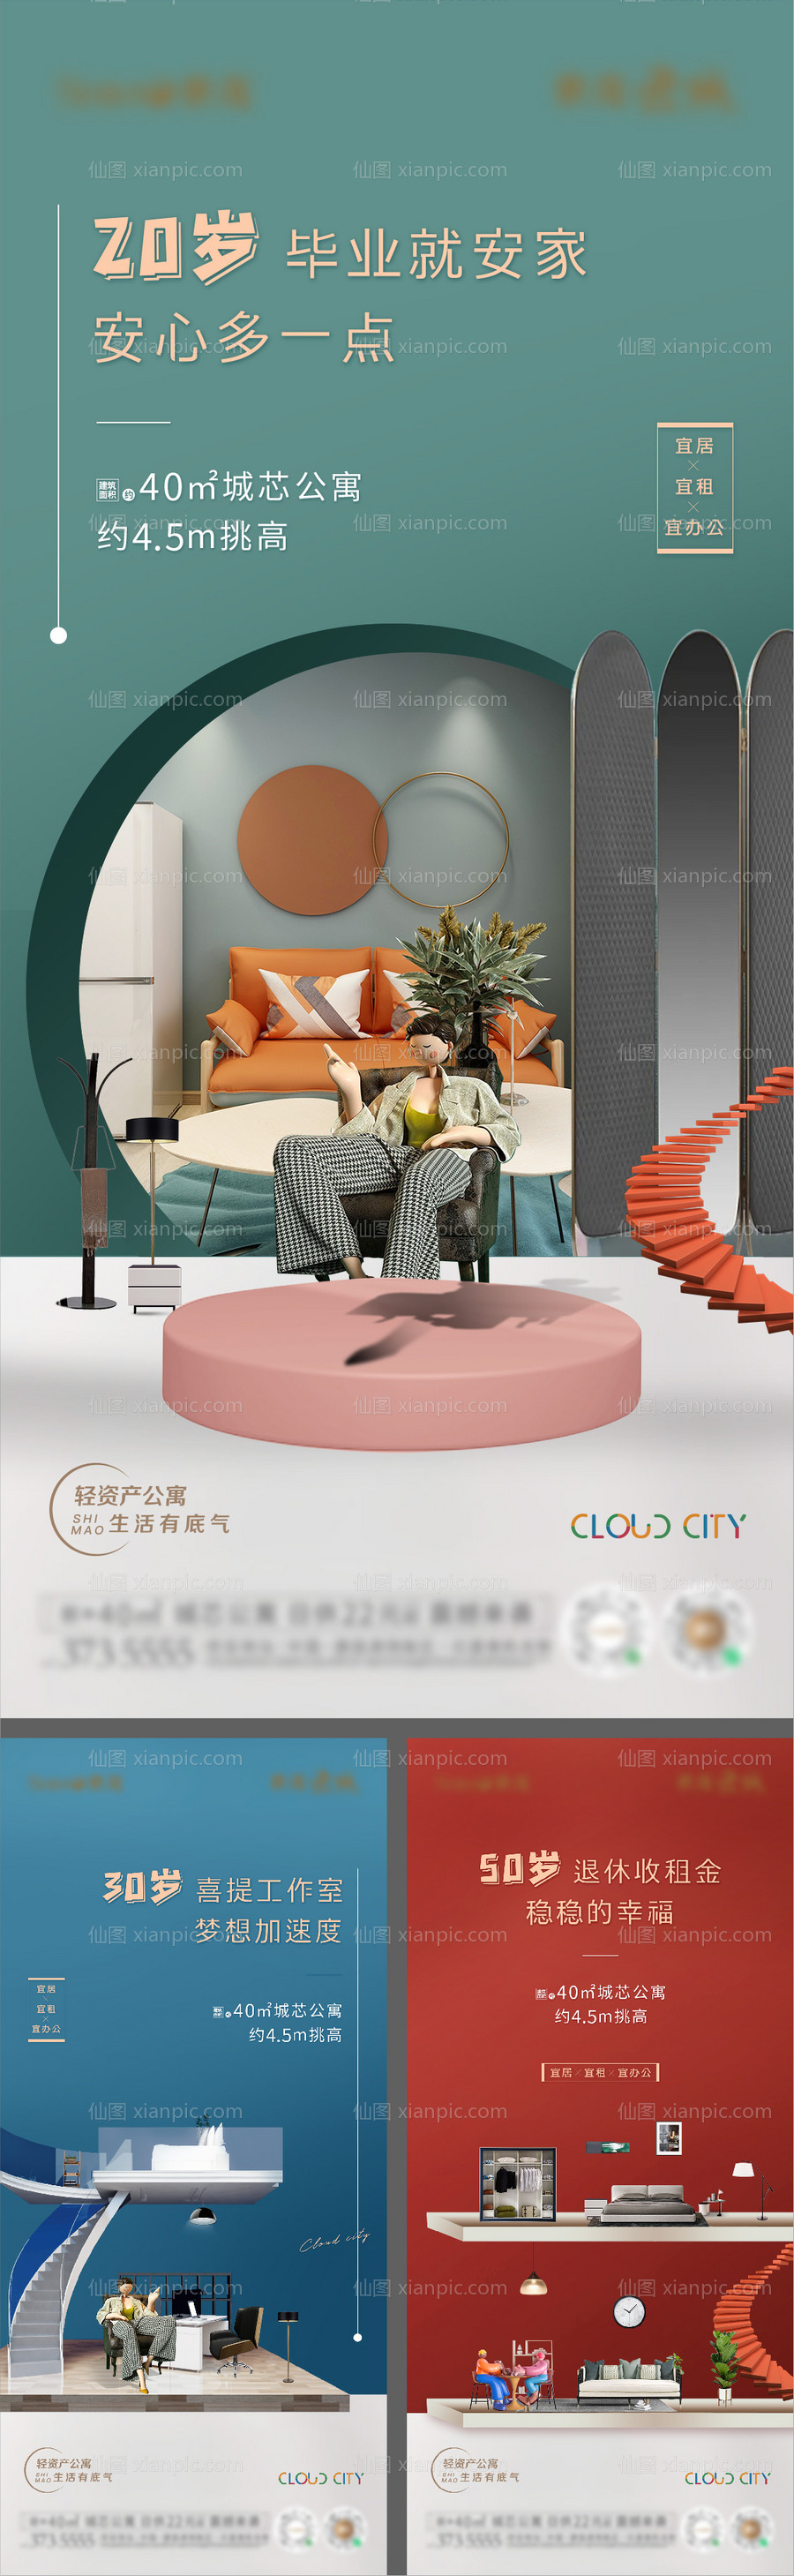 素材乐-地产公寓LOFT价值点系列海报